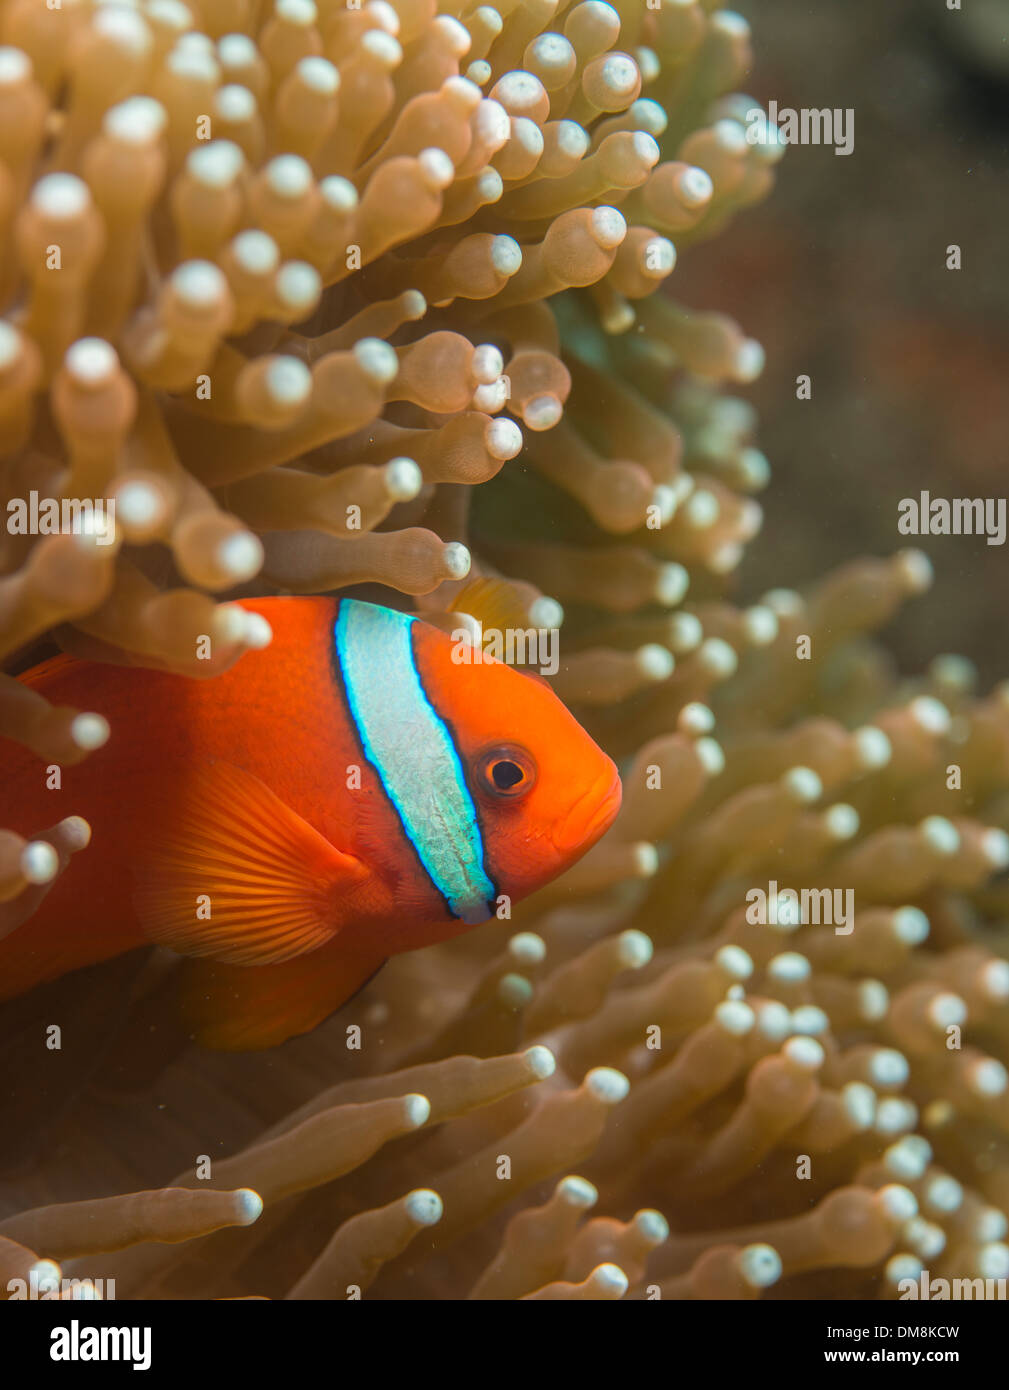 El pez payaso escondido en una anémona Foto de stock